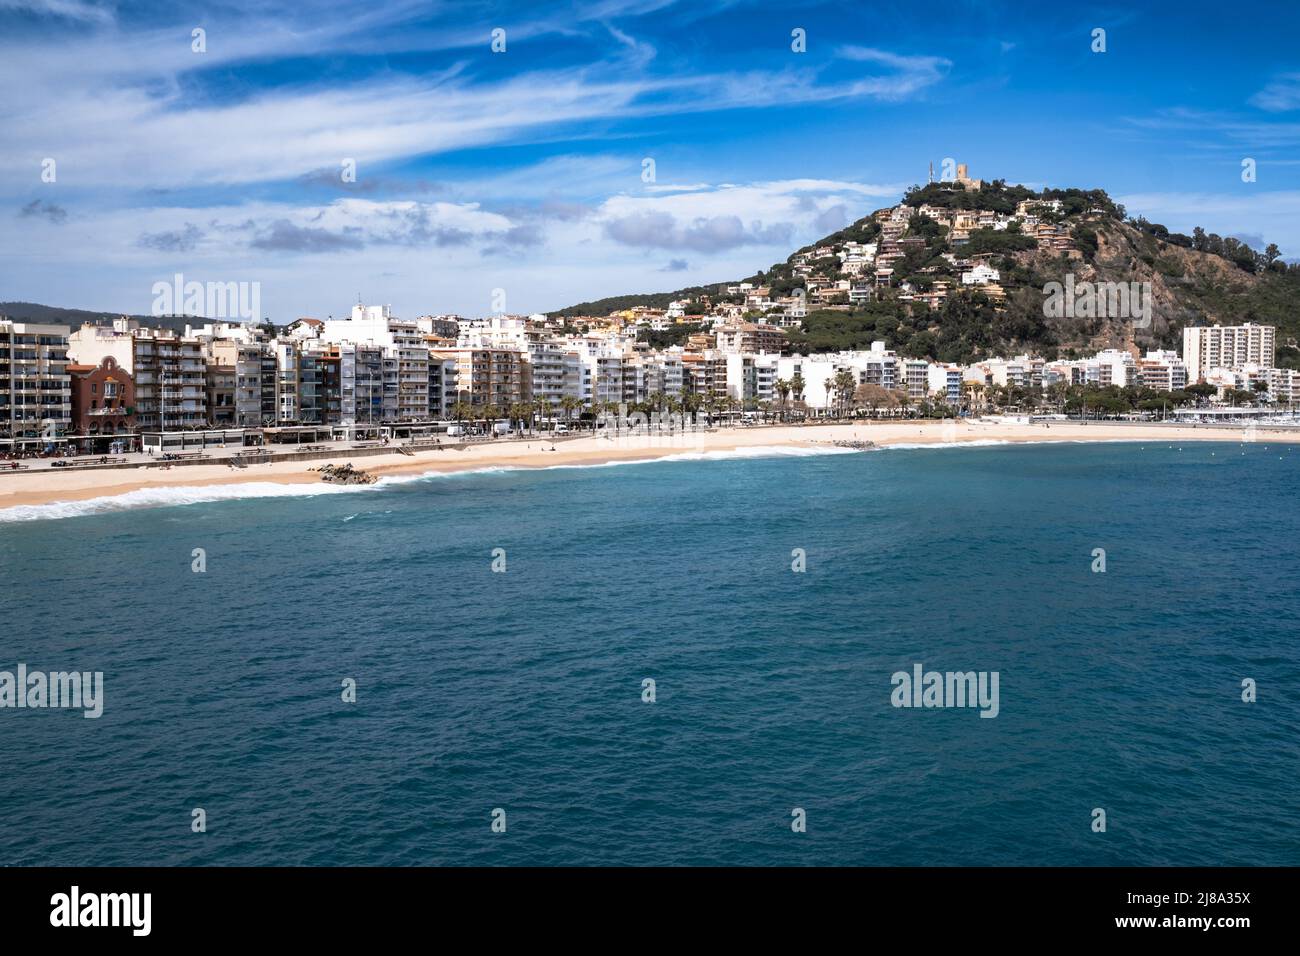 Blanes Stadt, beliebtes Urlaubsziel an der Costa Brava in Katalonien, Spanien. Gebäude und Hotels am langen Strand. Schloss Sant Joan auf dem Hügel. Stockfoto